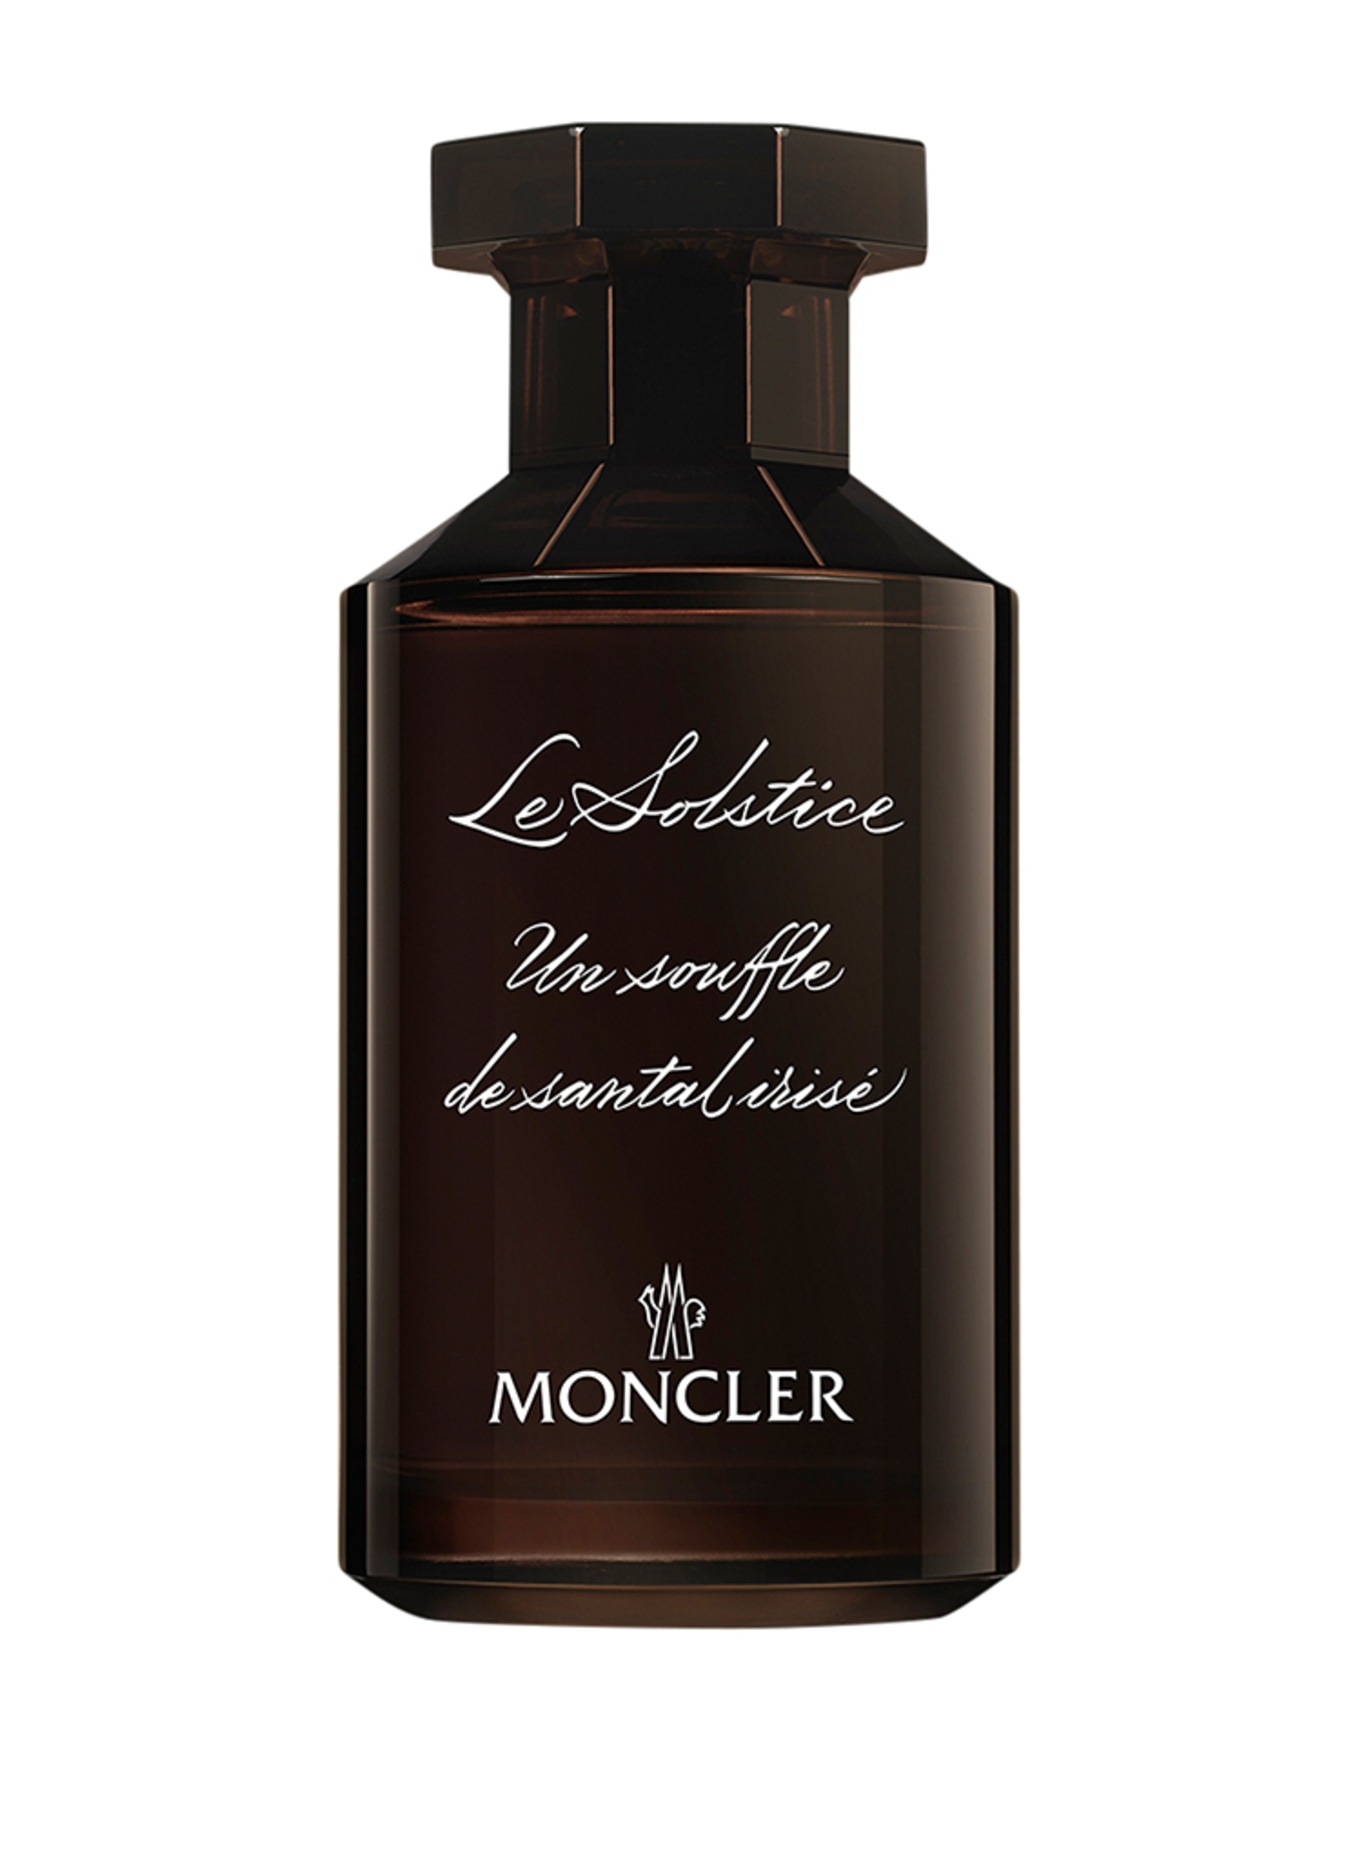 MONCLER Fragrances LE SOLSTICE (Obrazek 1)